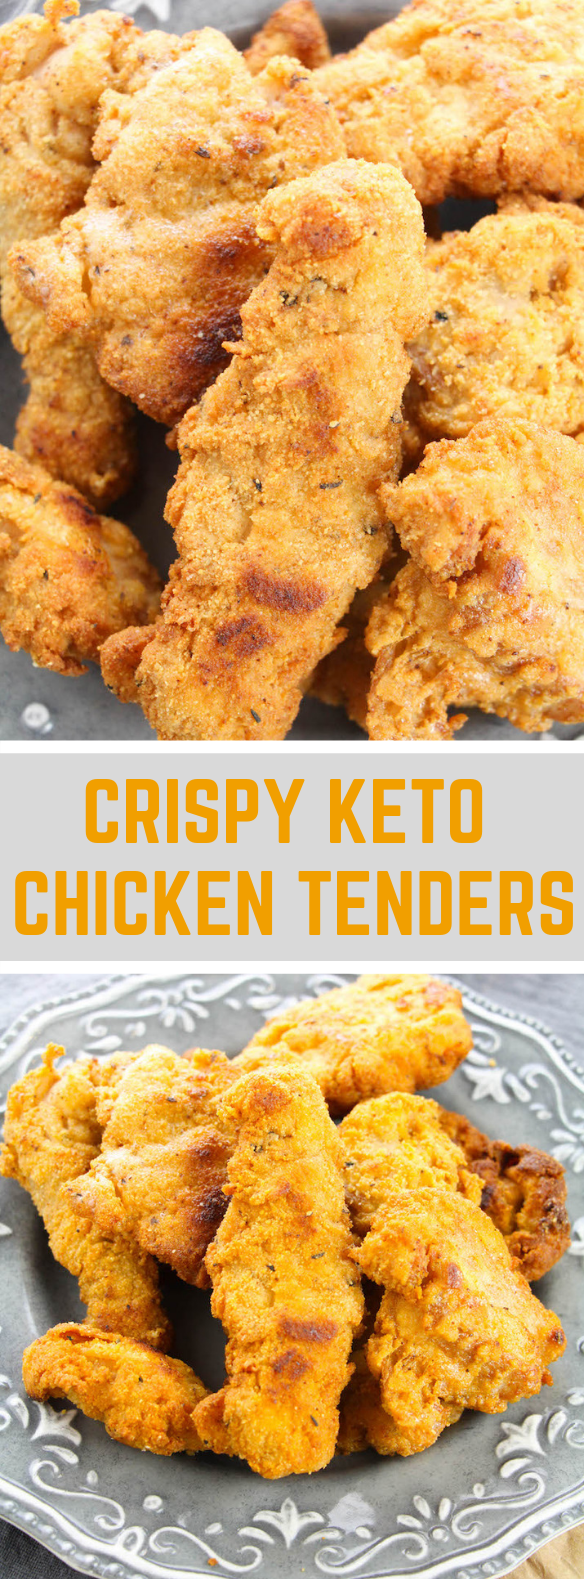 CRISPY KETO CHICKEN TENDERS #ketogenic #diet